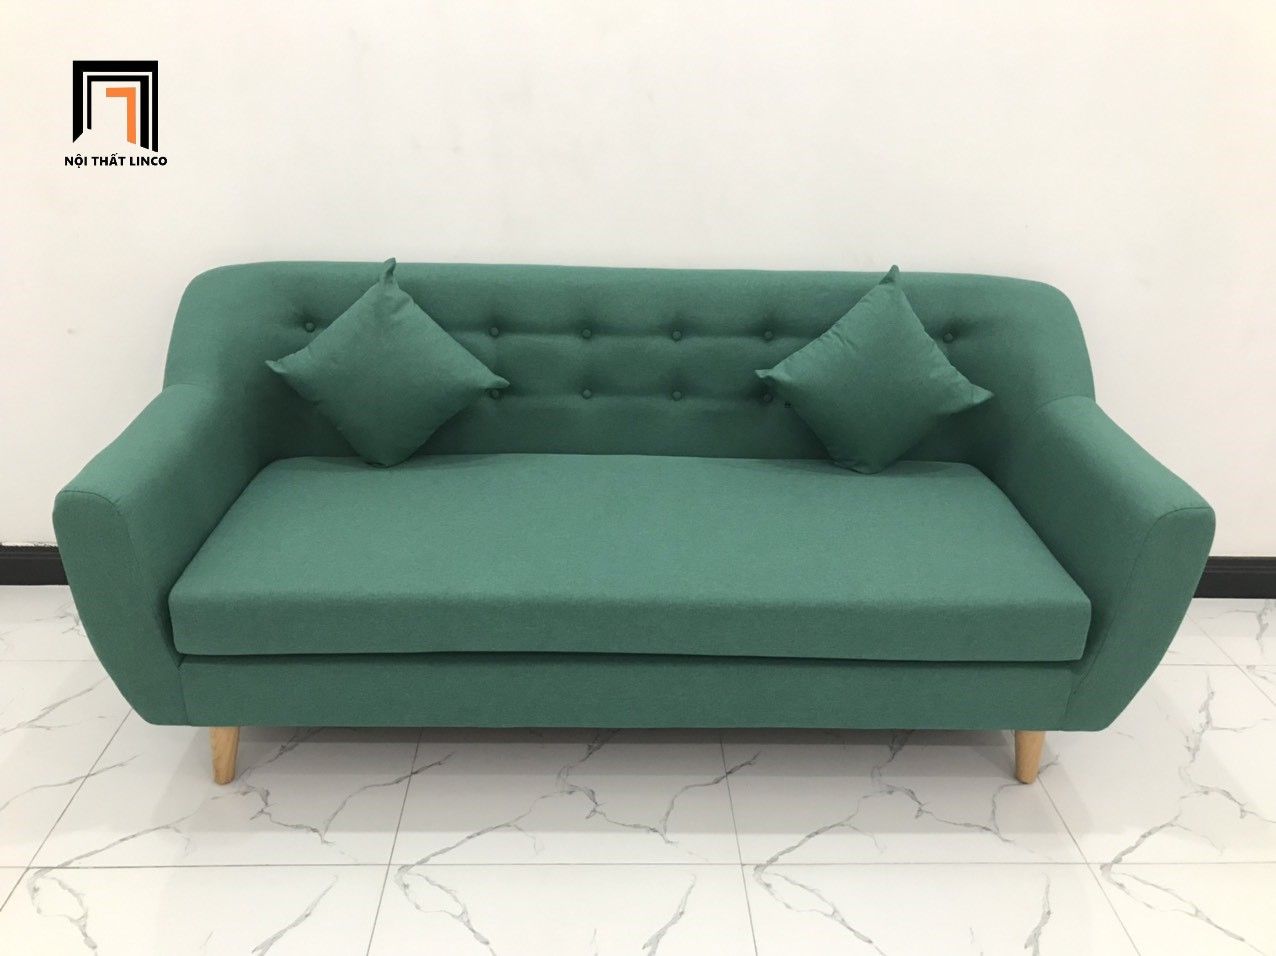  Ghế sofa văng băng dài 1m9 giá rẻ BGN màu xanh ngọc xinh xắn 